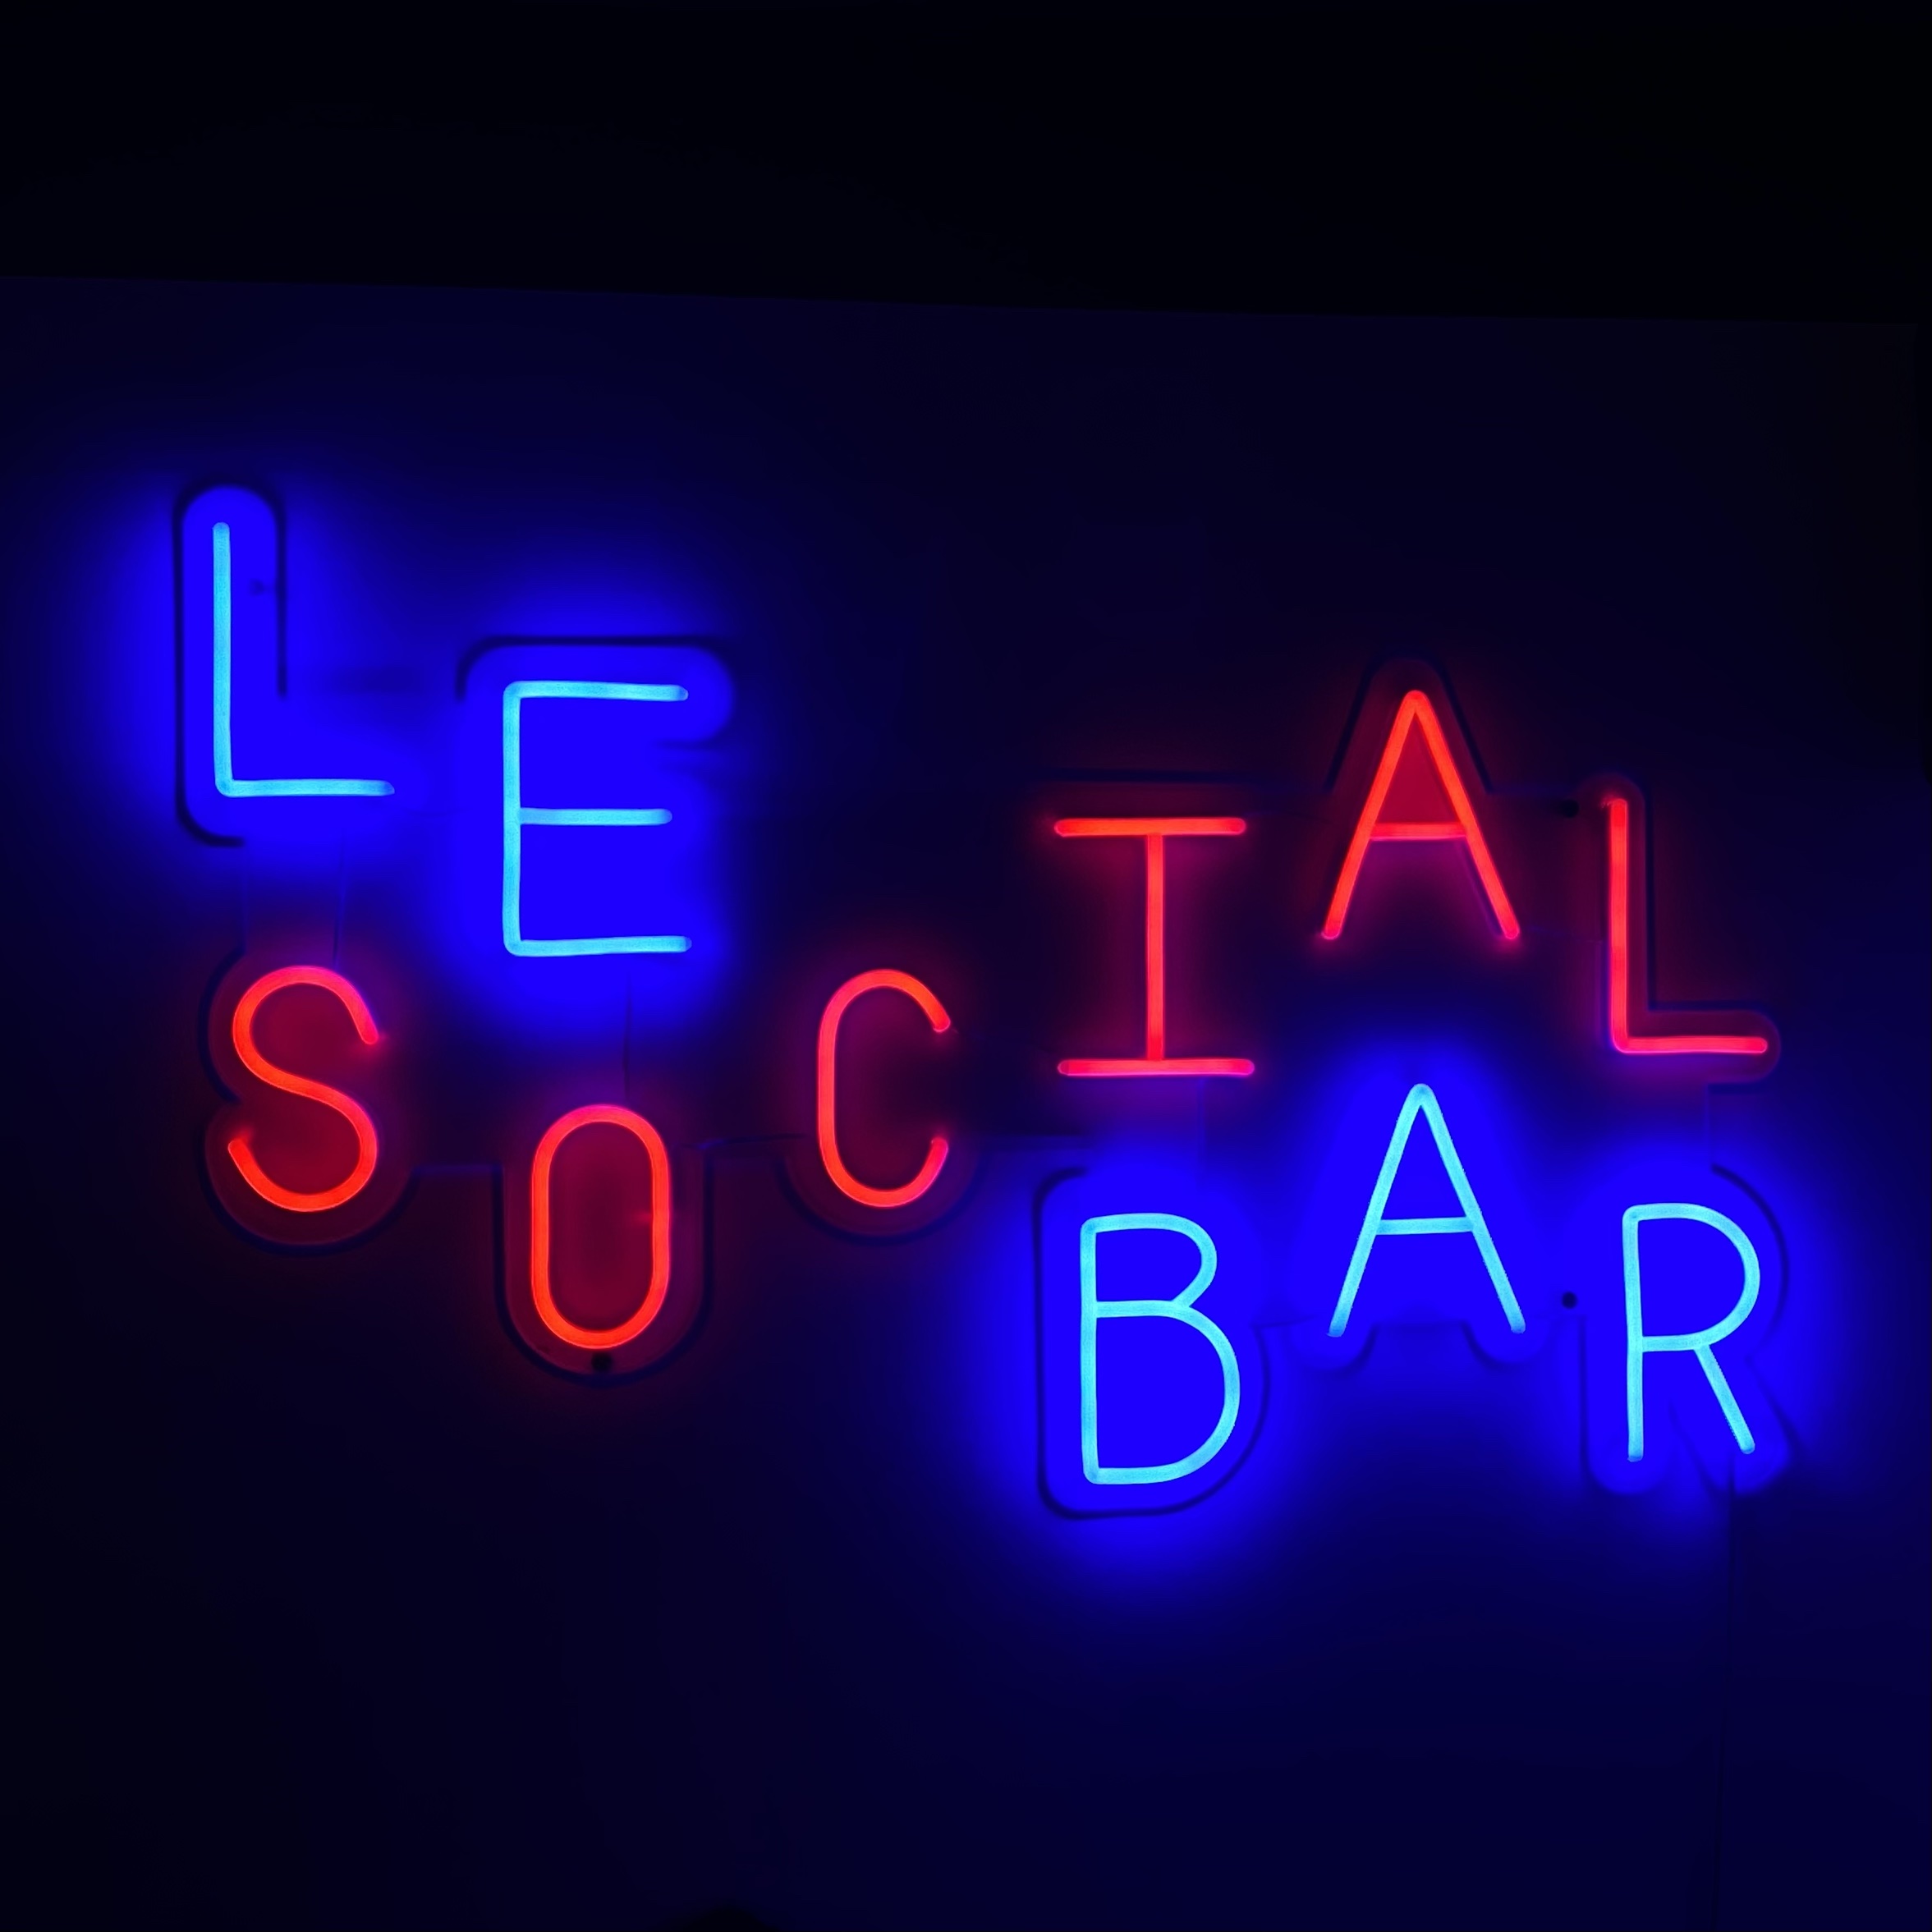 Le Social Bar Paris, créateur d’interactions